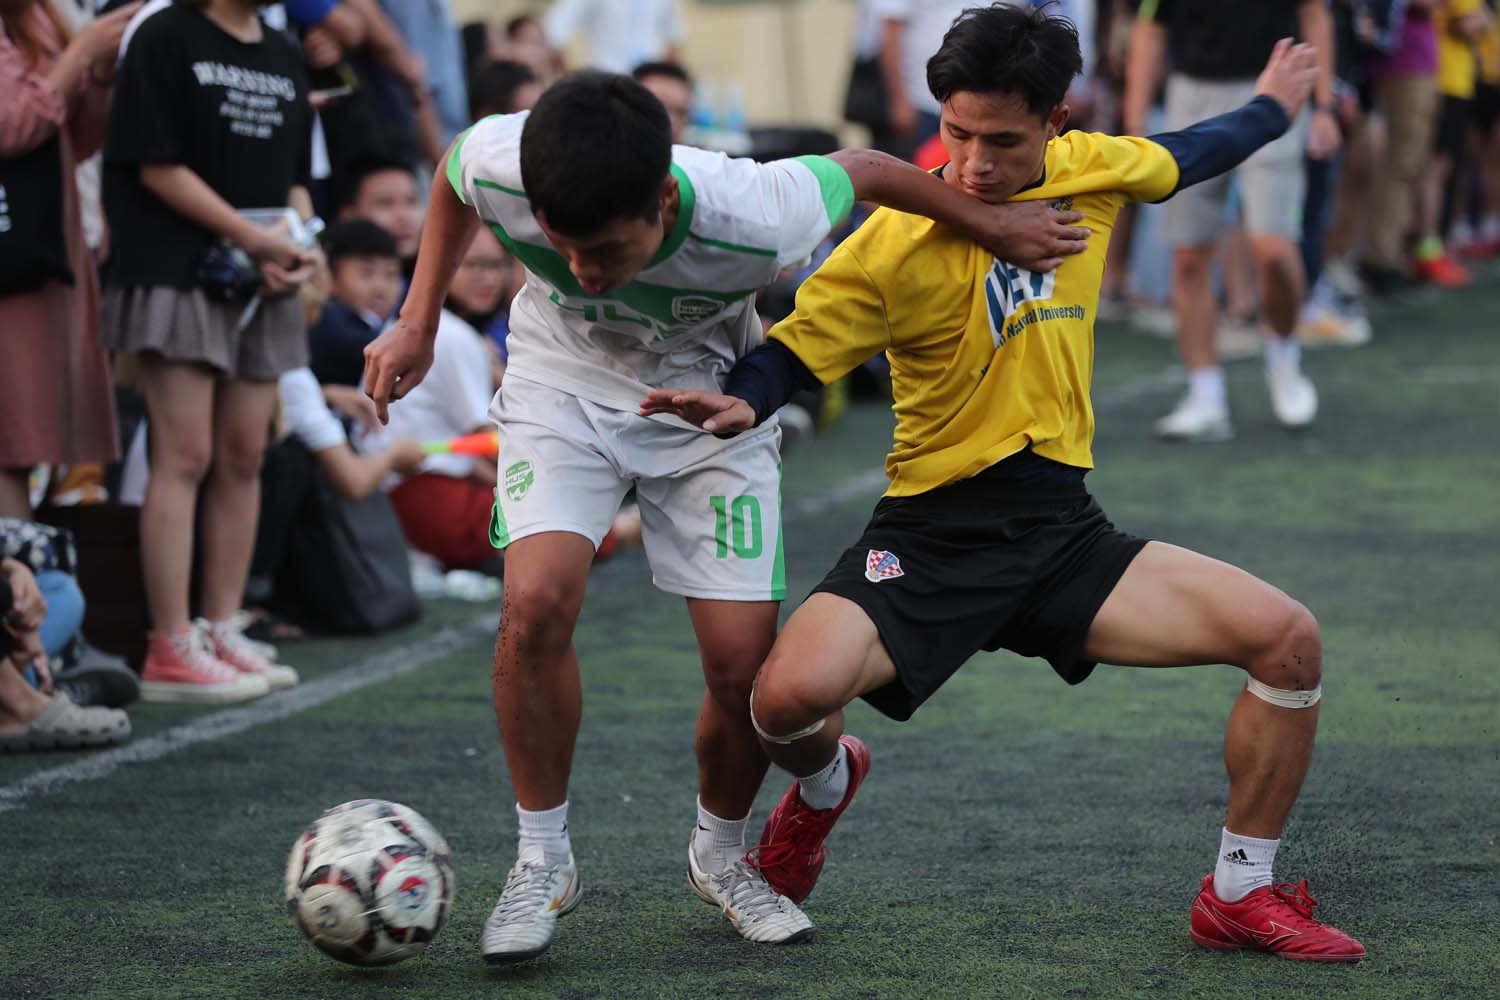 Gay cấn, hấp dẫn chung kết Giải bóng đá sinh viên Đại học Quốc gia Hà Nội